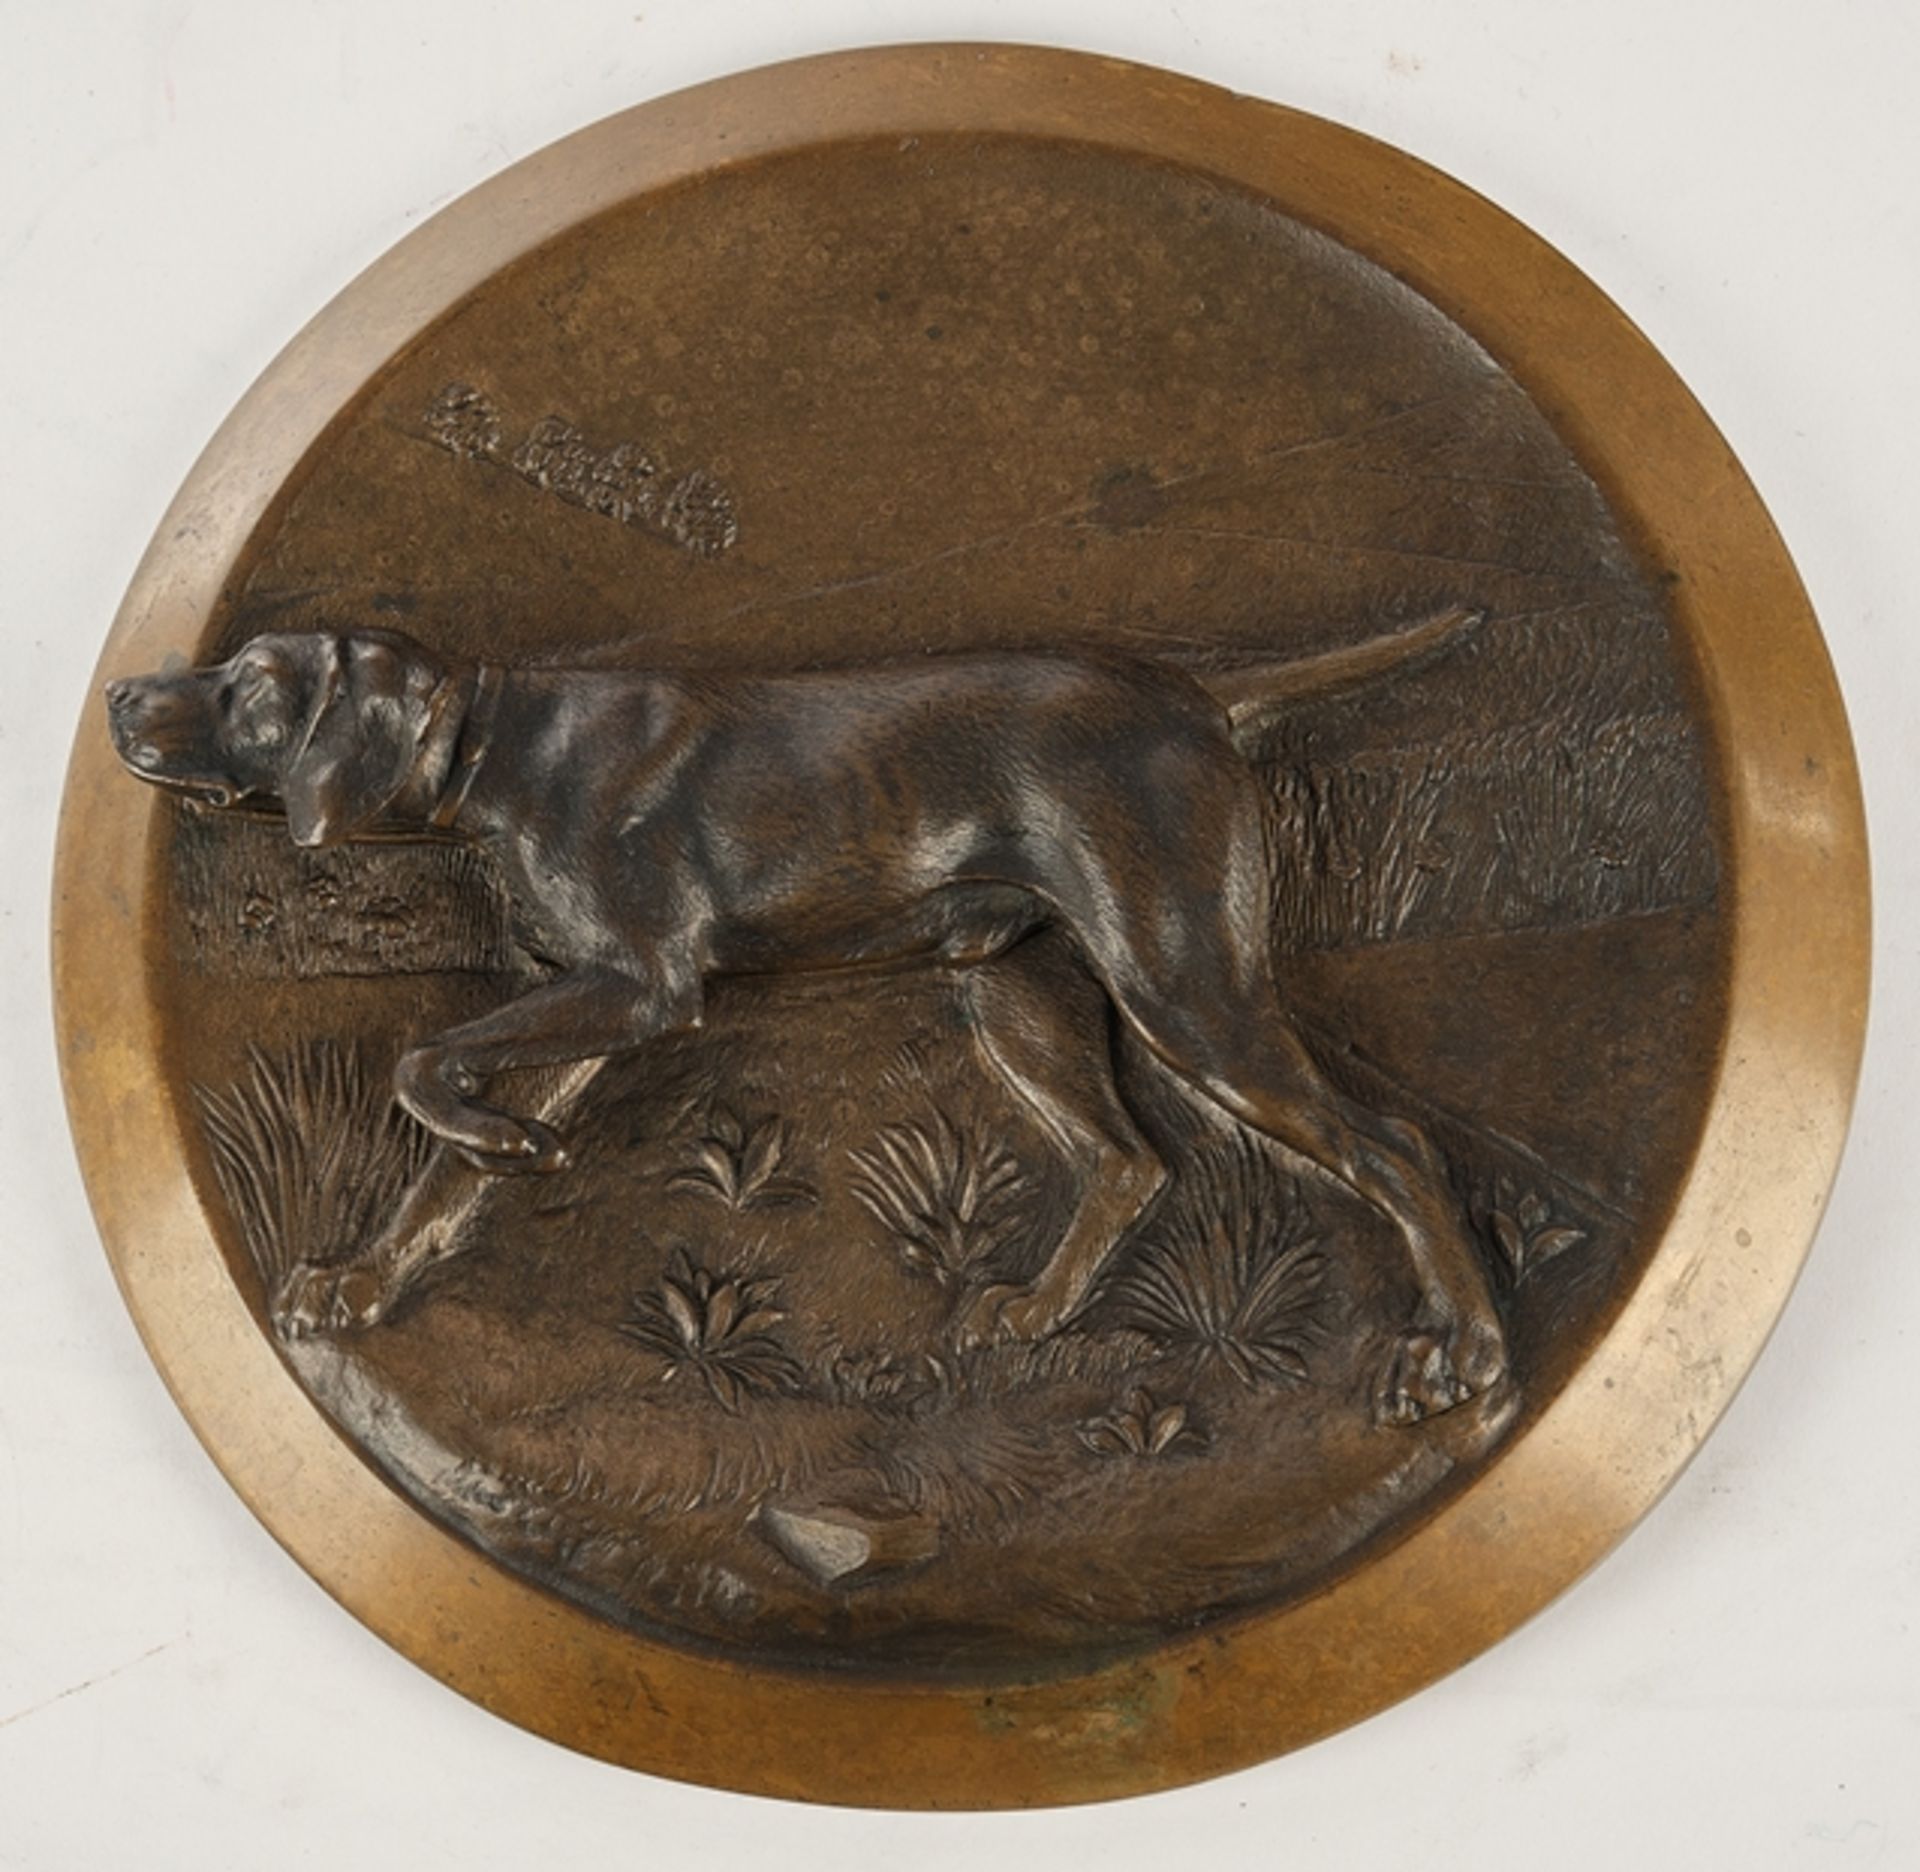 Teller mit Jagdhund-Motiv, Bronze, um 1900, rückseitig Modell-Nr. 2097, ø 22.5 cm, Rand leicht best